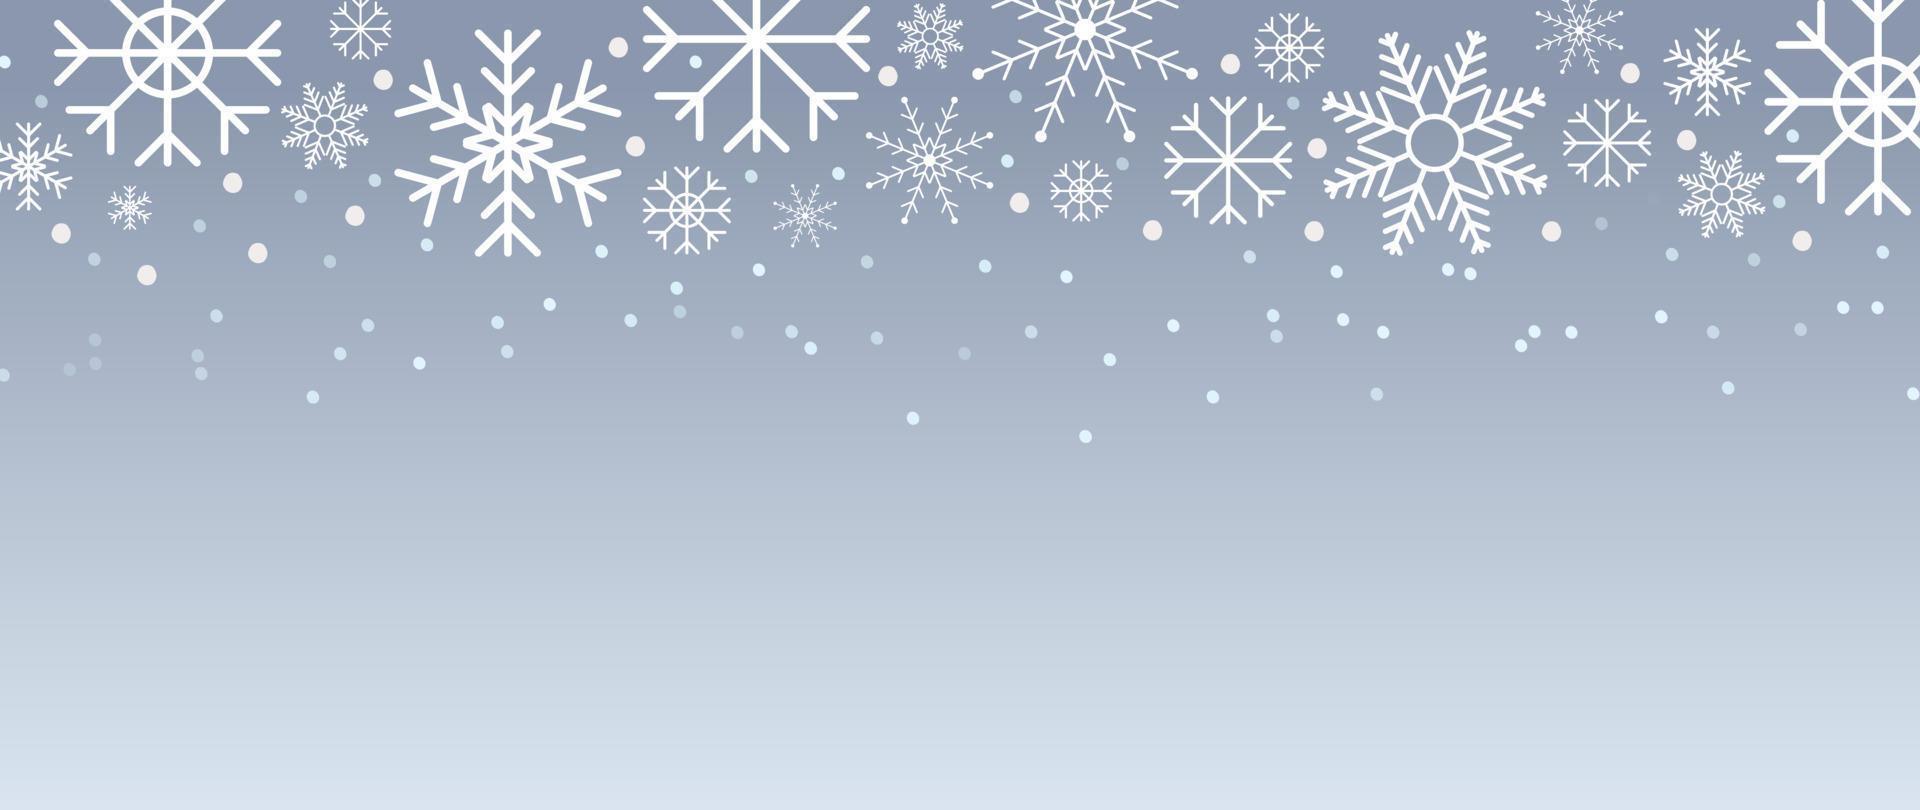 élégante illustration vectorielle de flocon de neige hiver fond. flocon de neige décoratif de luxe et chutes de neige sur fond gris dégradé. conception adaptée à la carte d'invitation, aux voeux, au papier peint, à l'affiche, à la bannière. vecteur